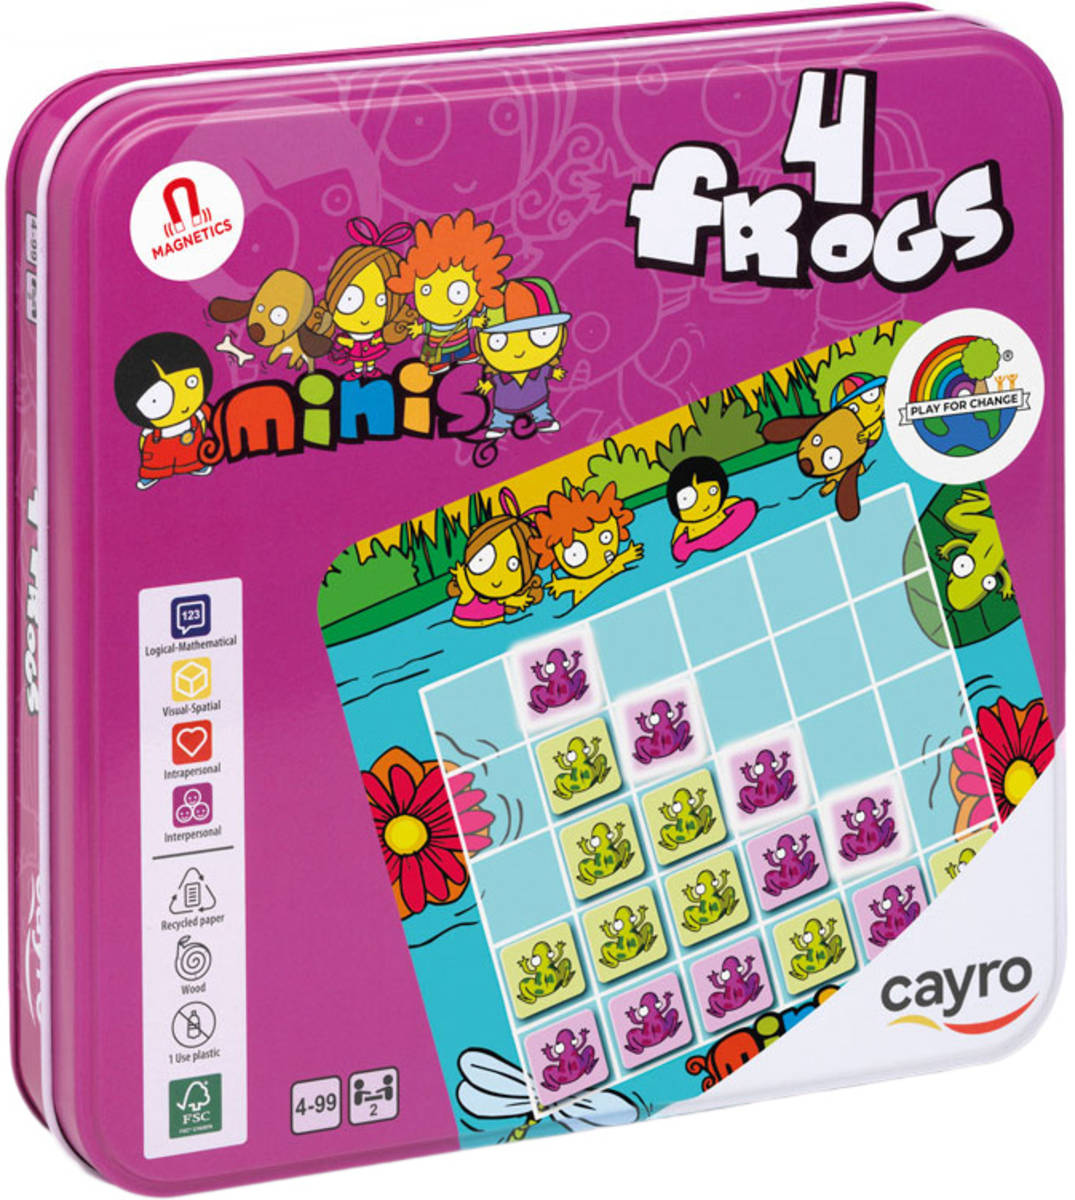 CAYRO Hra 4 Frogs magnetická cestovní *SPOLEČENSKÉ HRY*